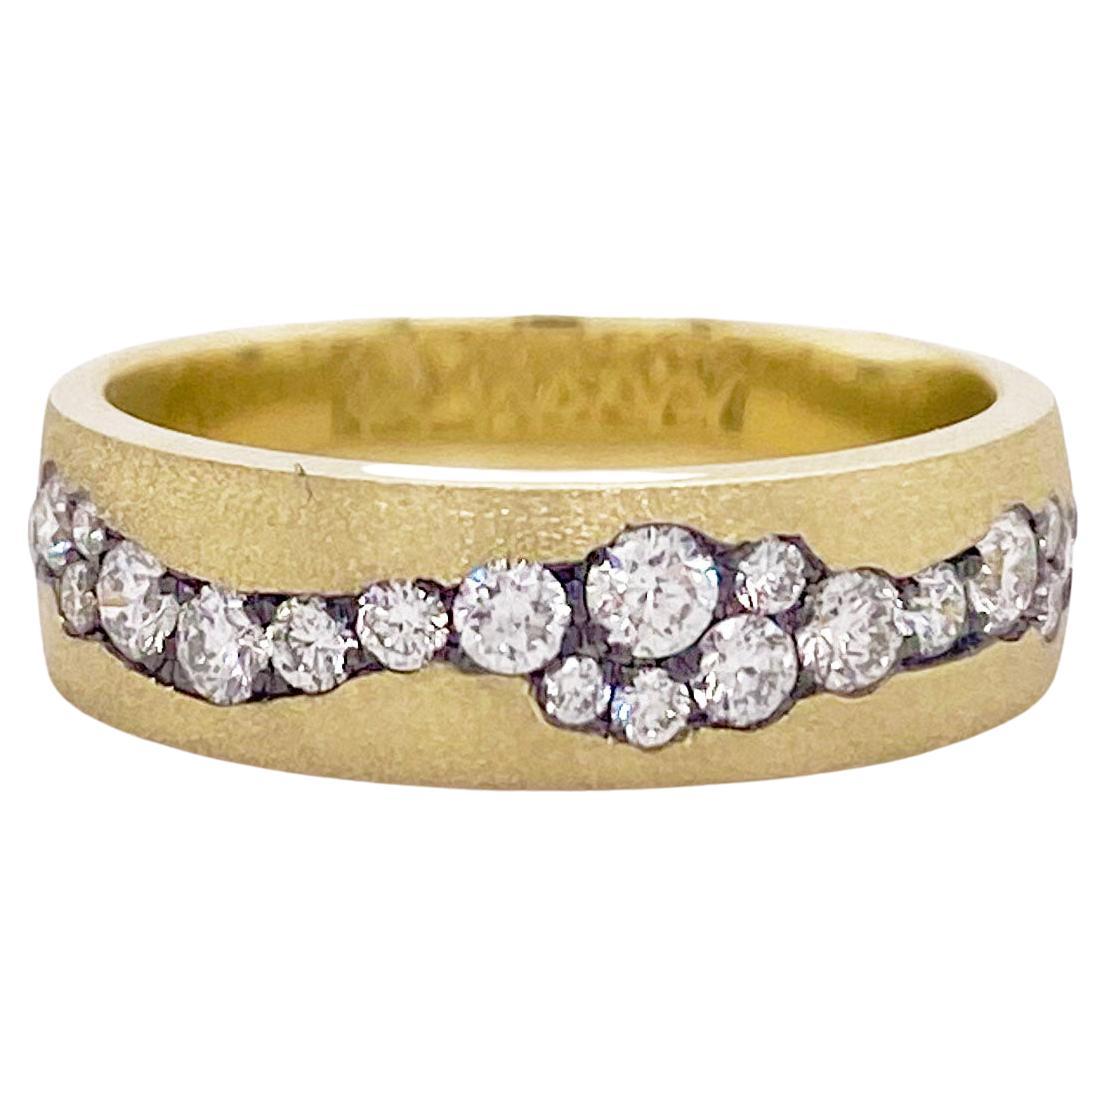 Bague Healing Diamond Ring, anneau en or vert satiné avec diamants, anneau encastré de diamants